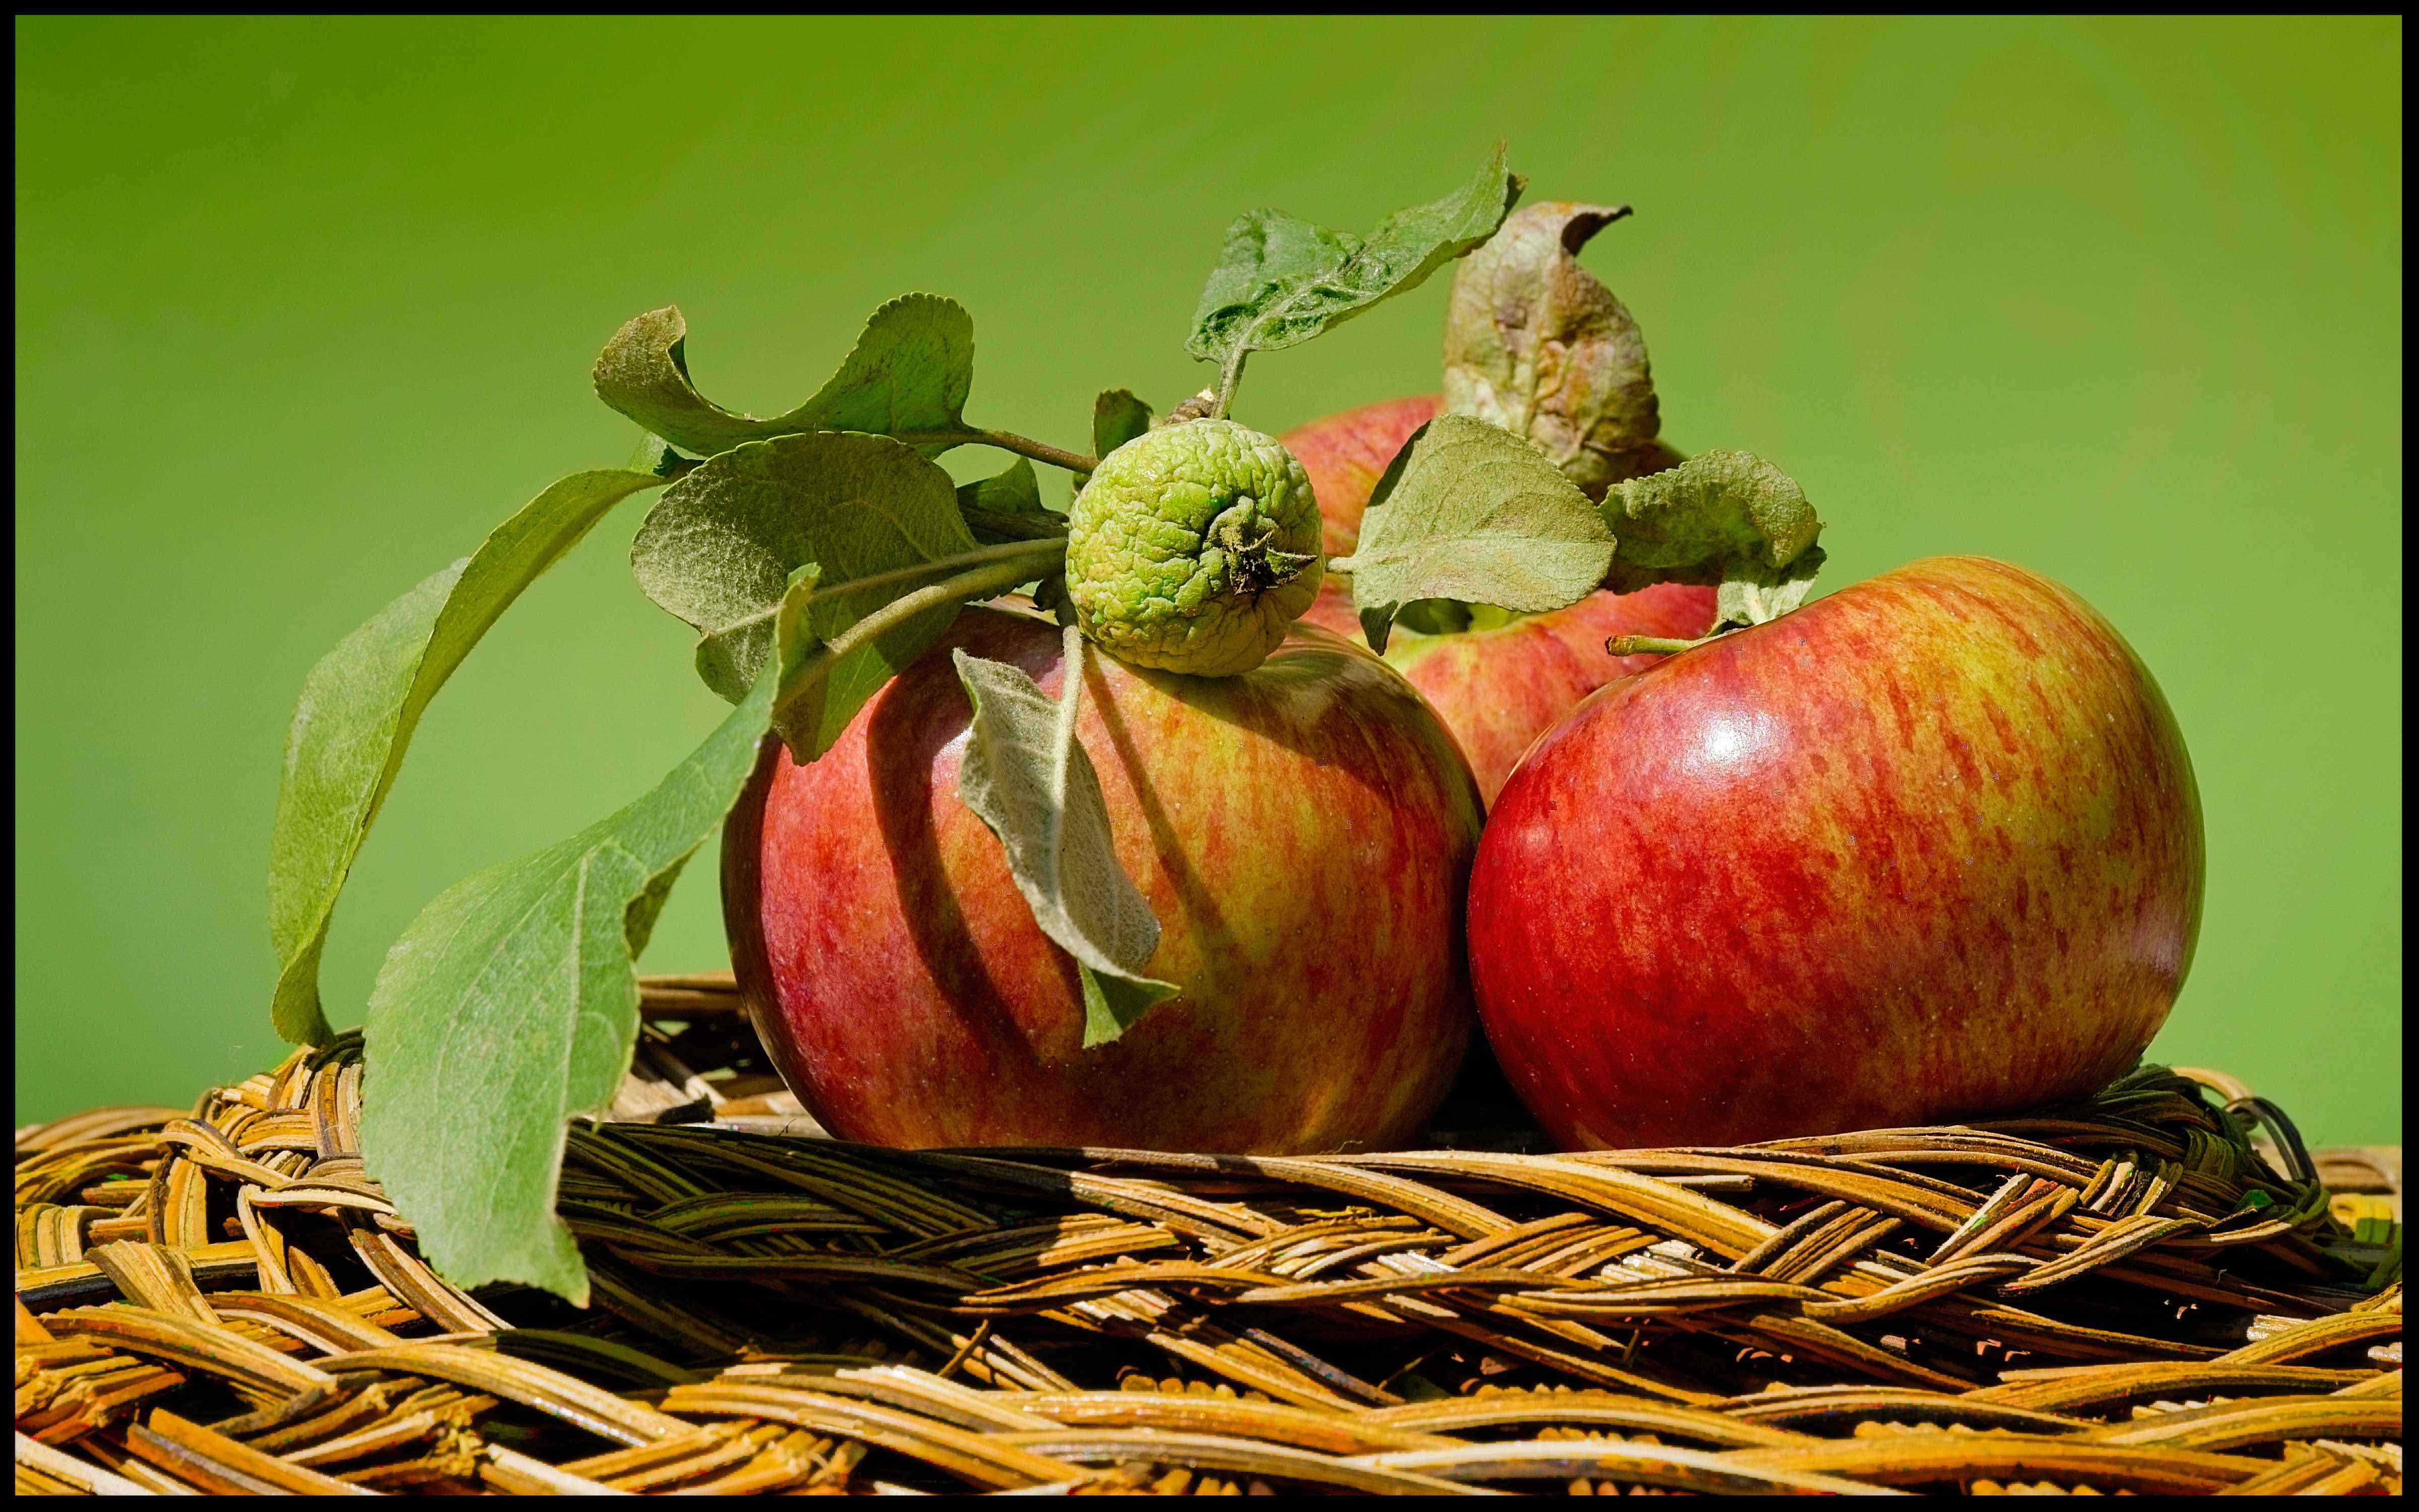 Early Apples by Bob Crocker